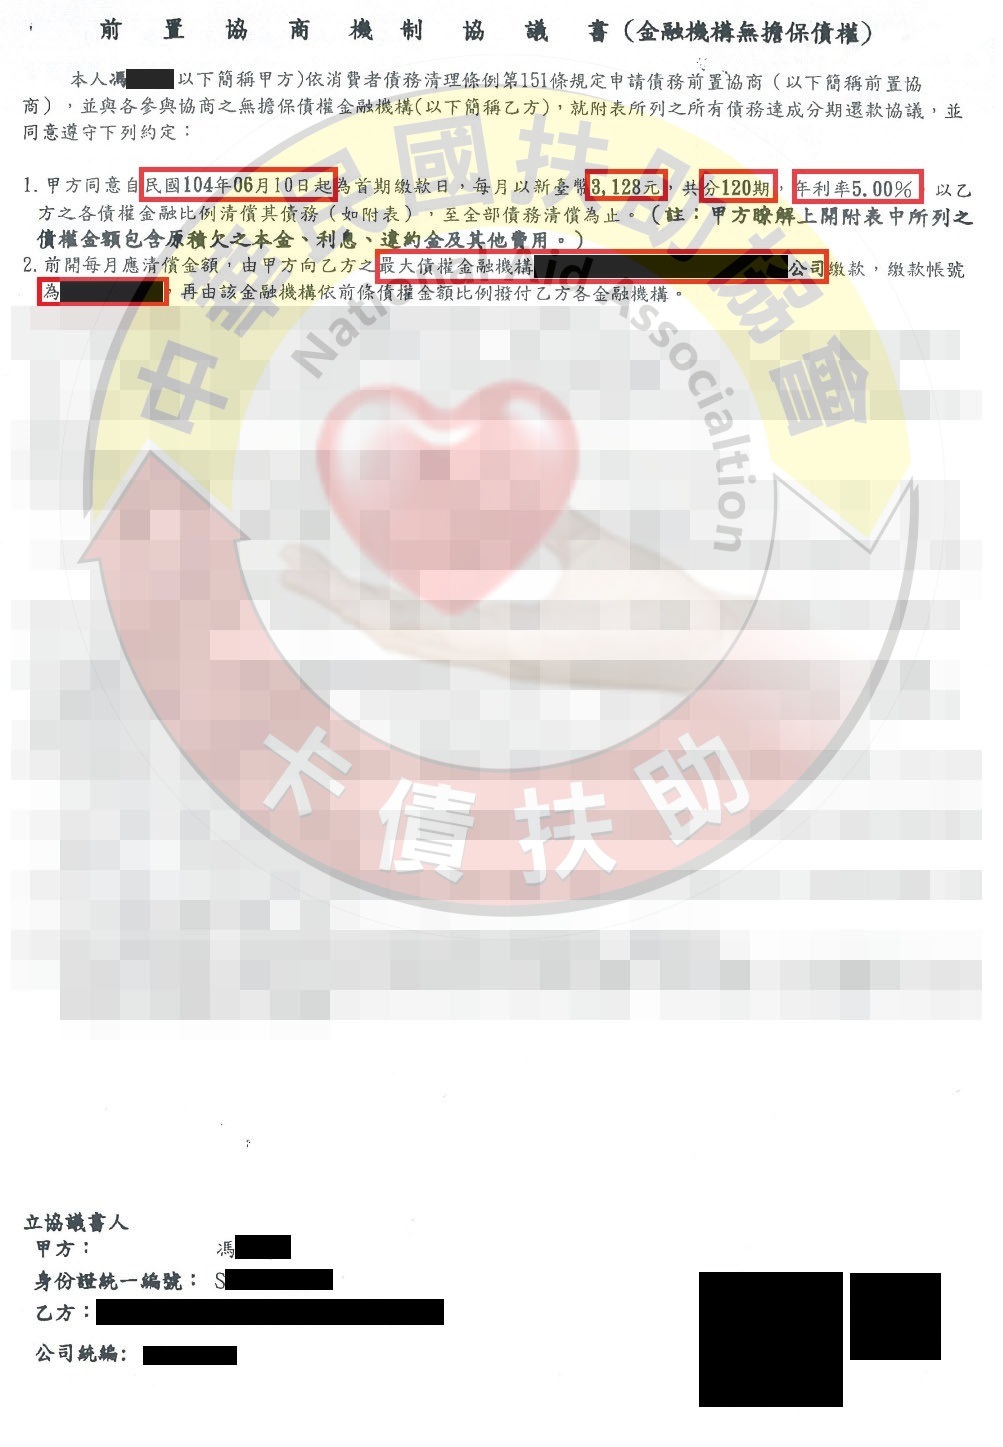 高雄馮小姐-協商成功依120期5%月付3,128元